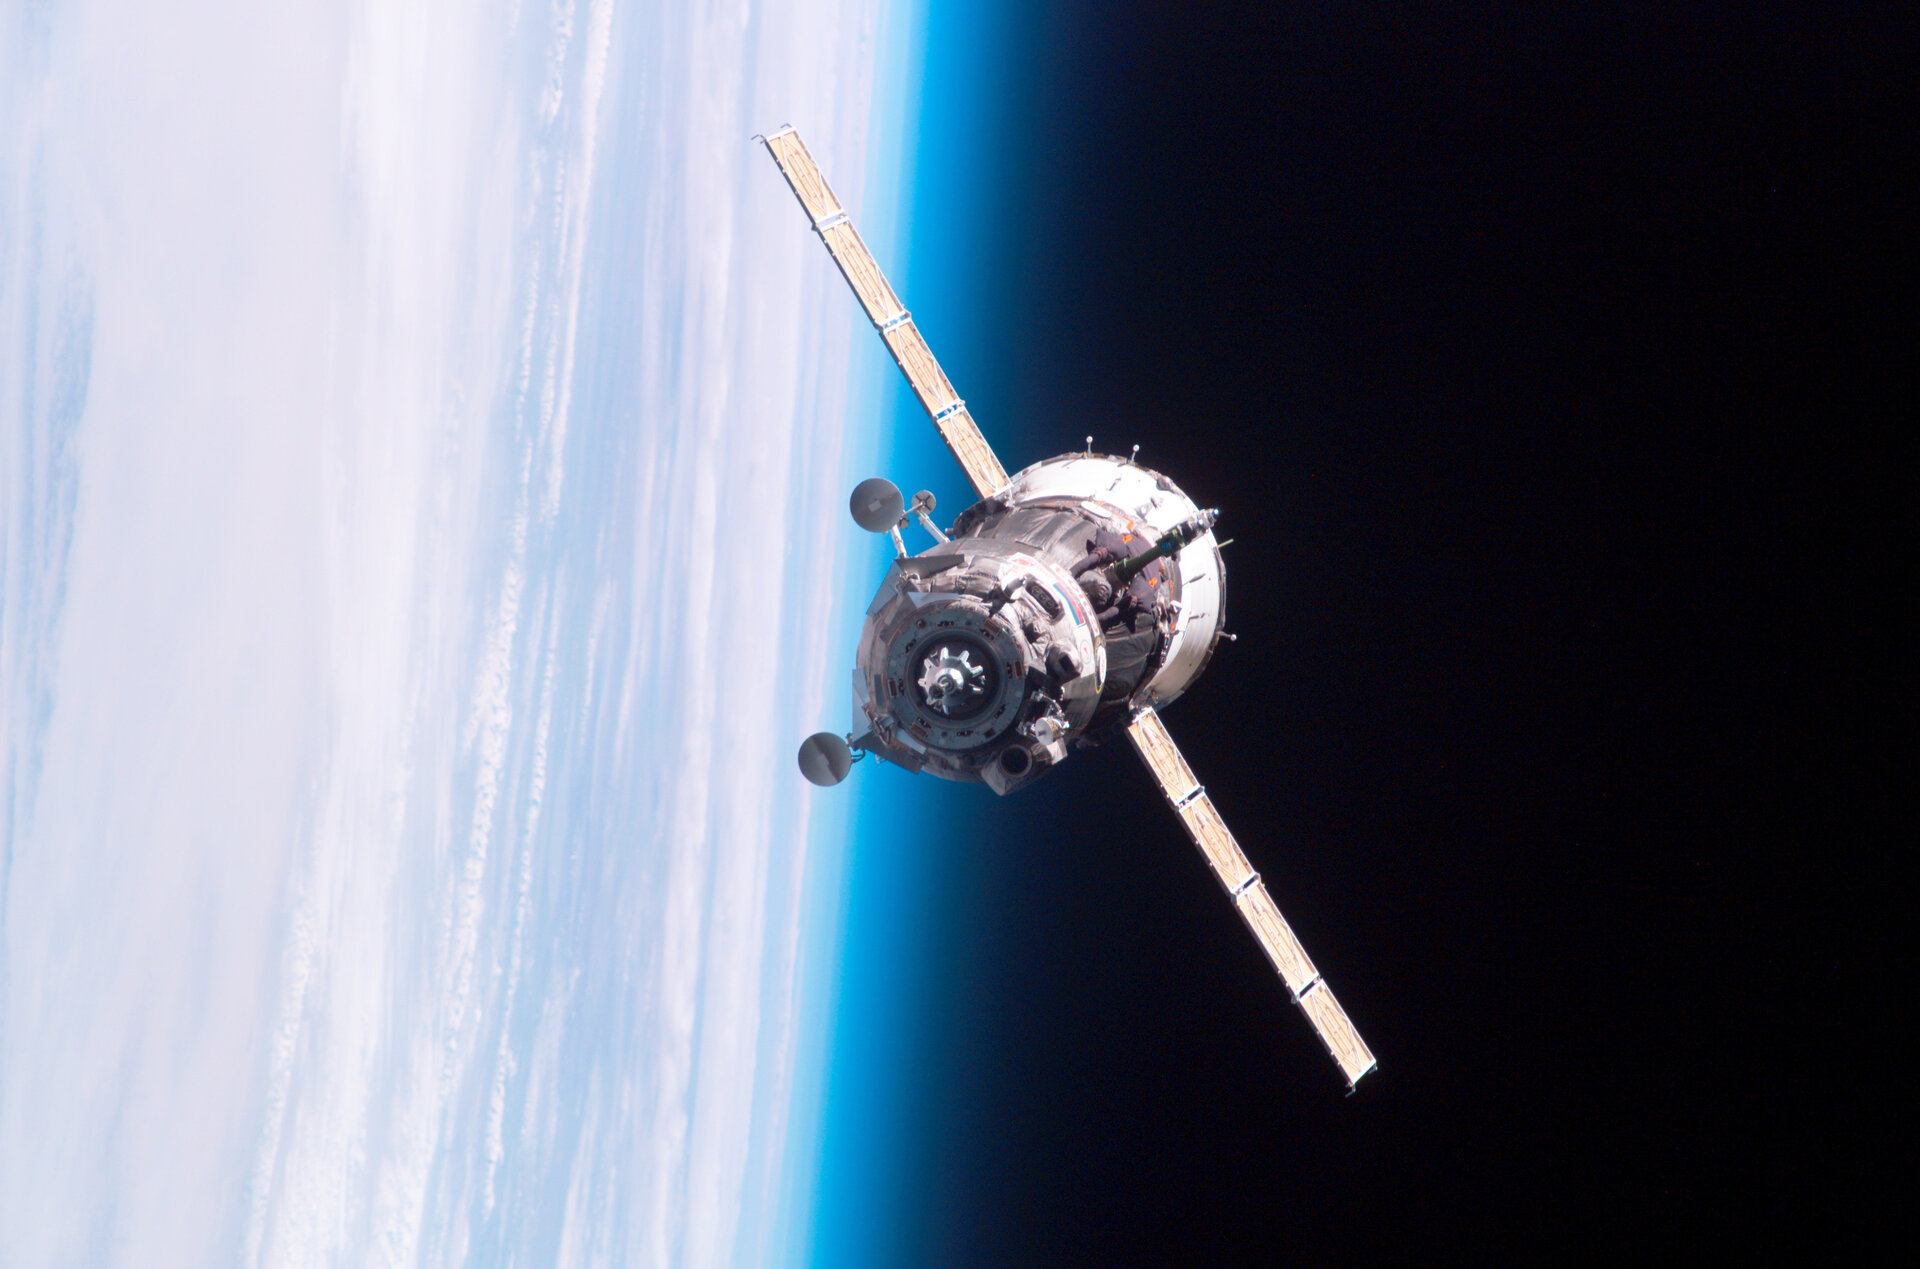 Soyuz voyage home